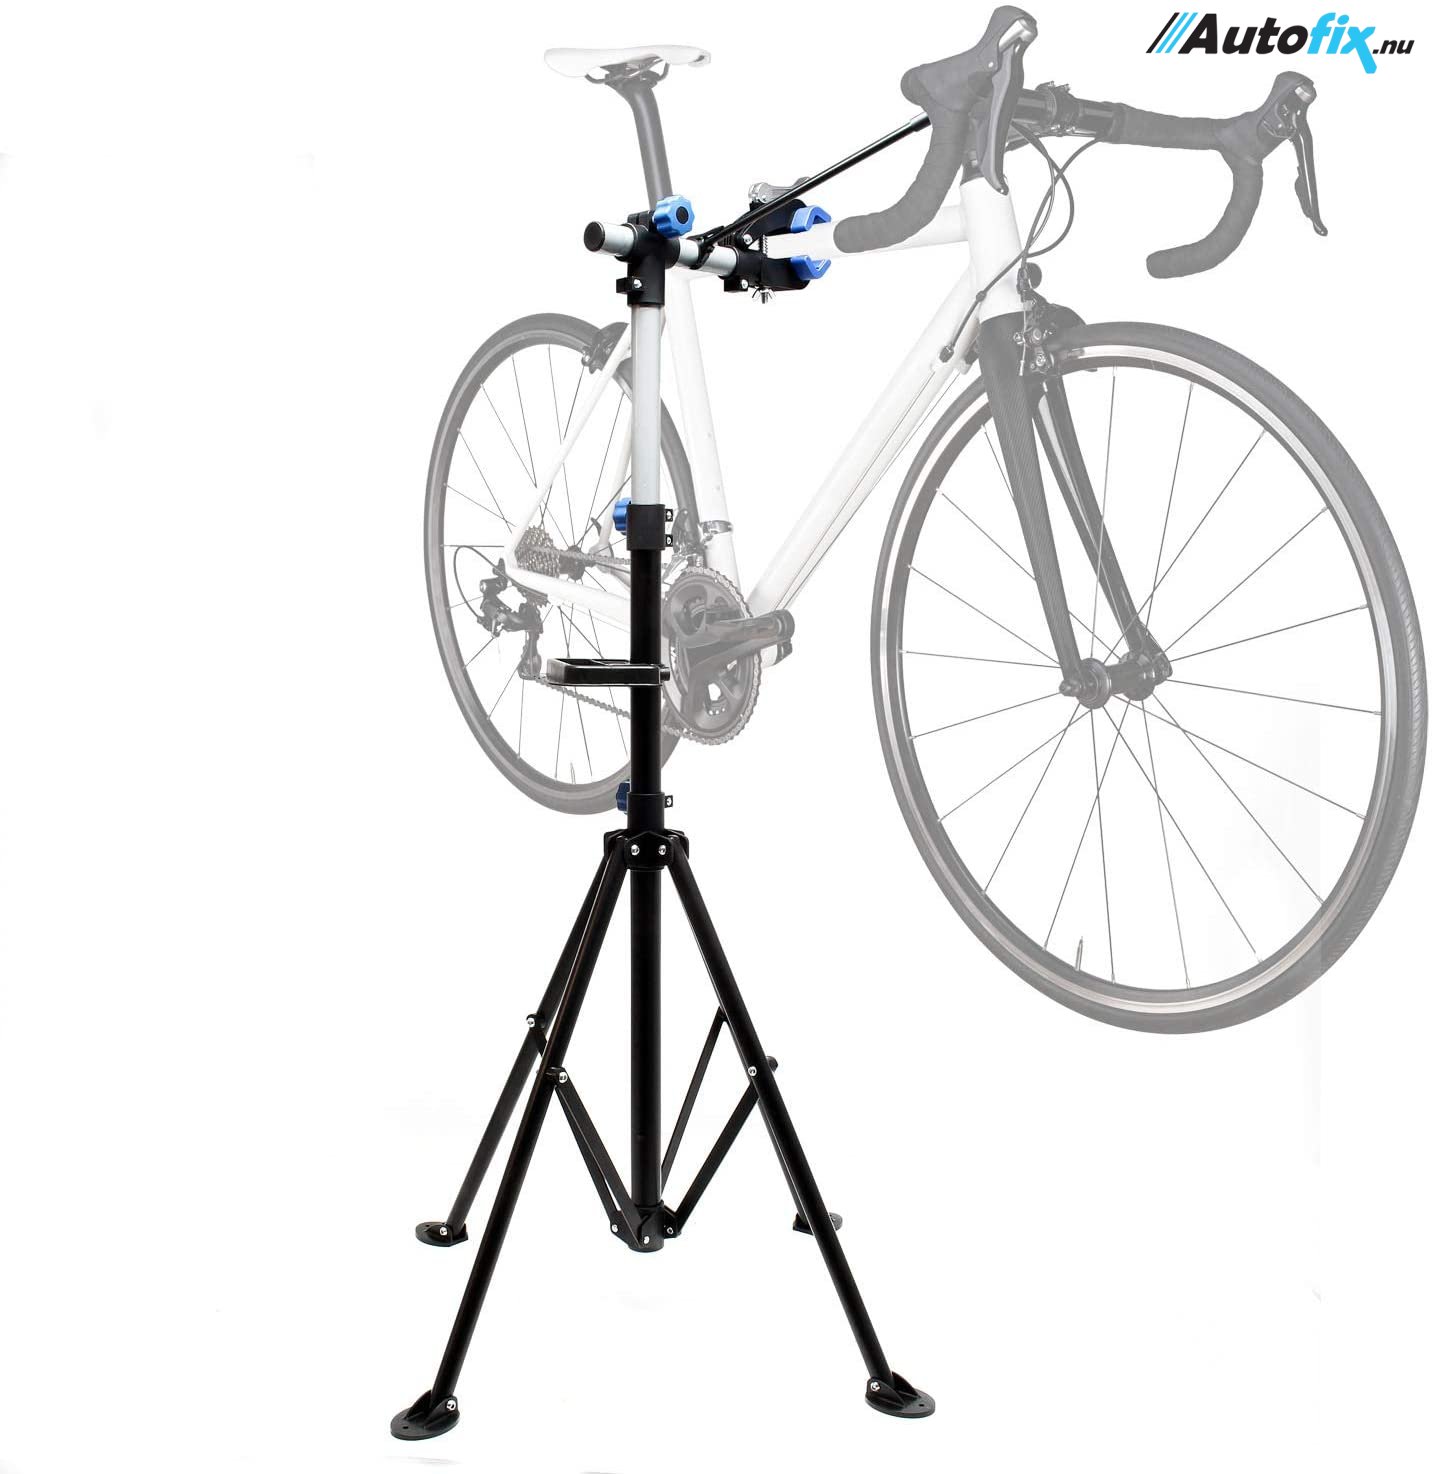 præst mave Udsøgt Cykelstand / Arbejdsstand til EL-cykler - Justerbar 360° - Lodret justering  108-187 cm - Cykelstand - Autofix.nu